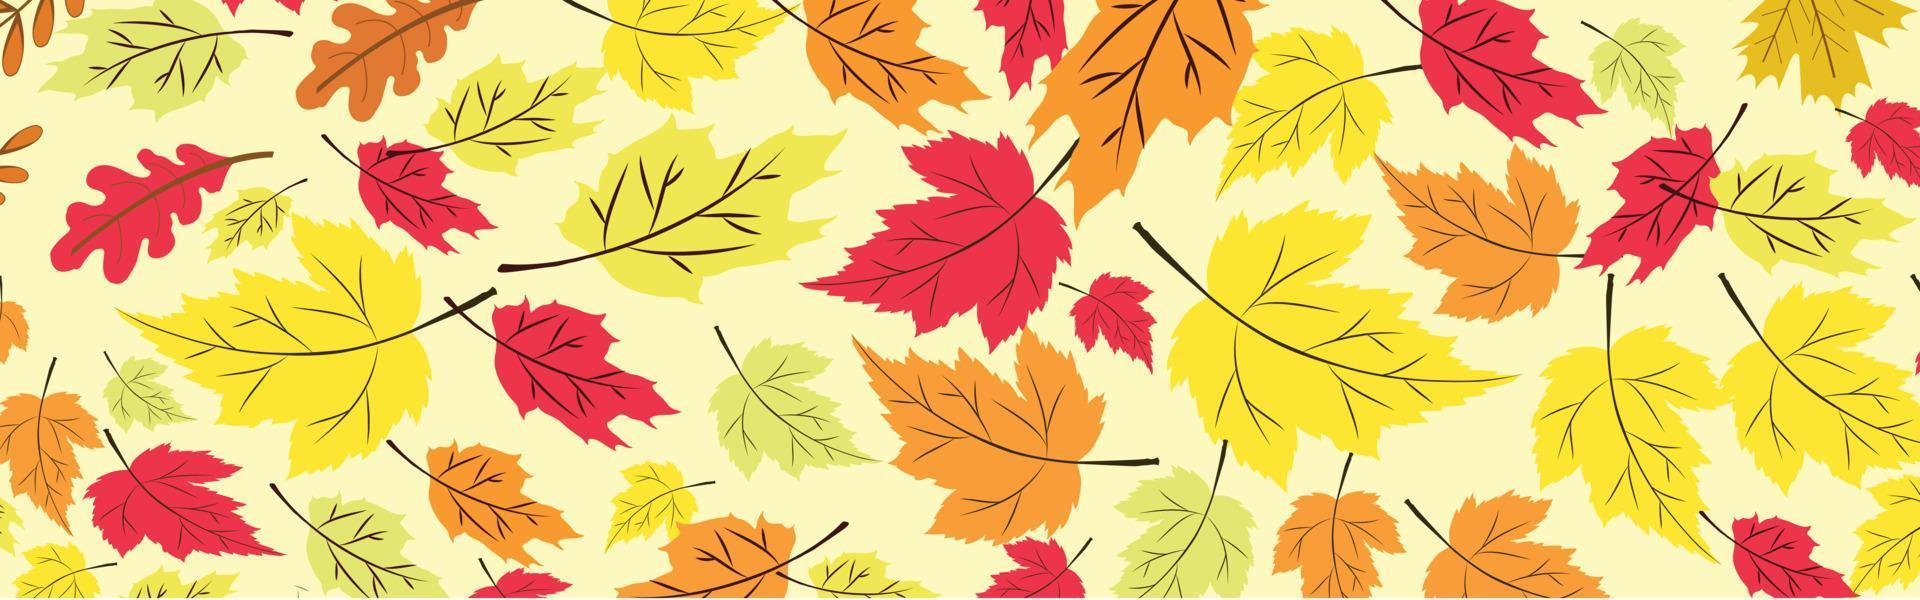 Precioso patrón de hojas de otoño en colores cálidos y claros, repetición perfecta. estilo plano de moda. ideal para fondos, ropa y diseño editorial, tarjetas, papel de regalo, decoración del hogar, etc. vector